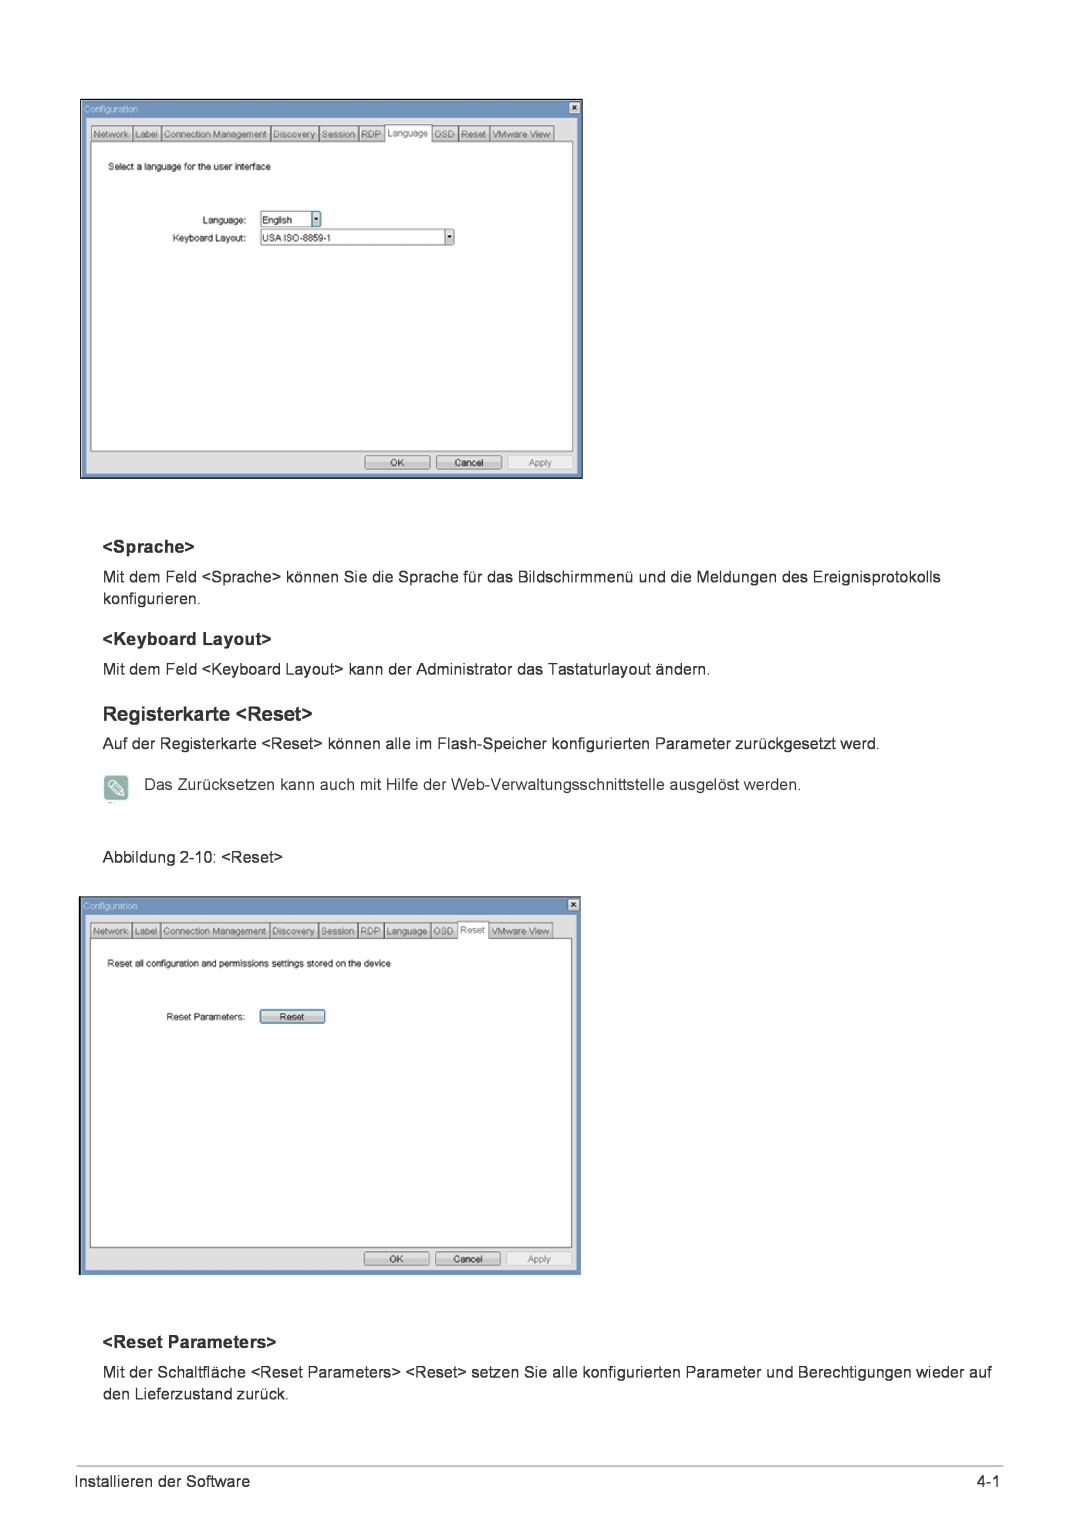 Samsung LF22NPBHBNP/EN manual Registerkarte Reset, Sprache, Keyboard Layout, Reset Parameters 